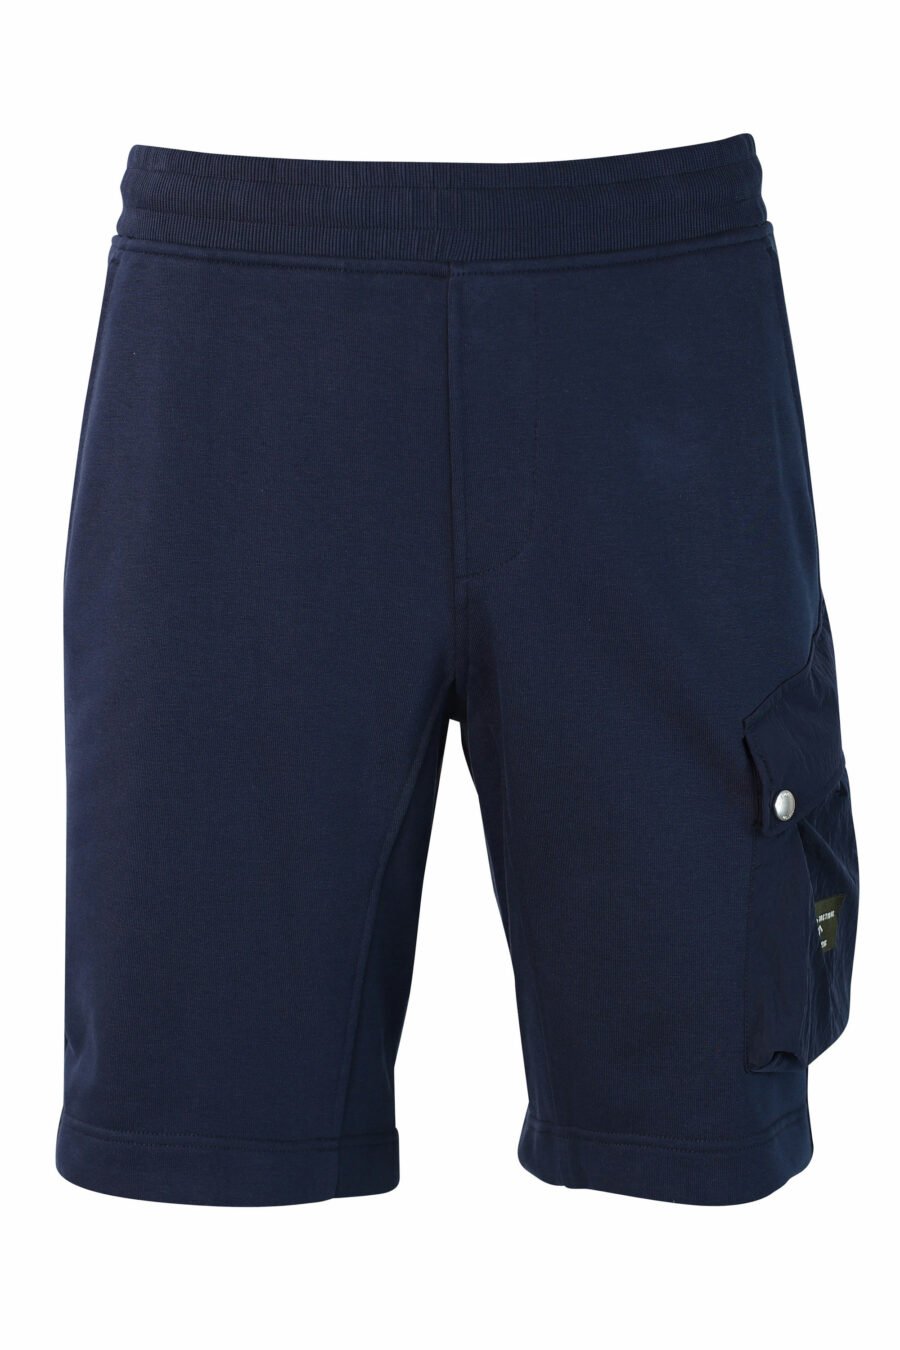 Pantalón de chándal corto azul con bolsillo lateral - IMG 9872 1